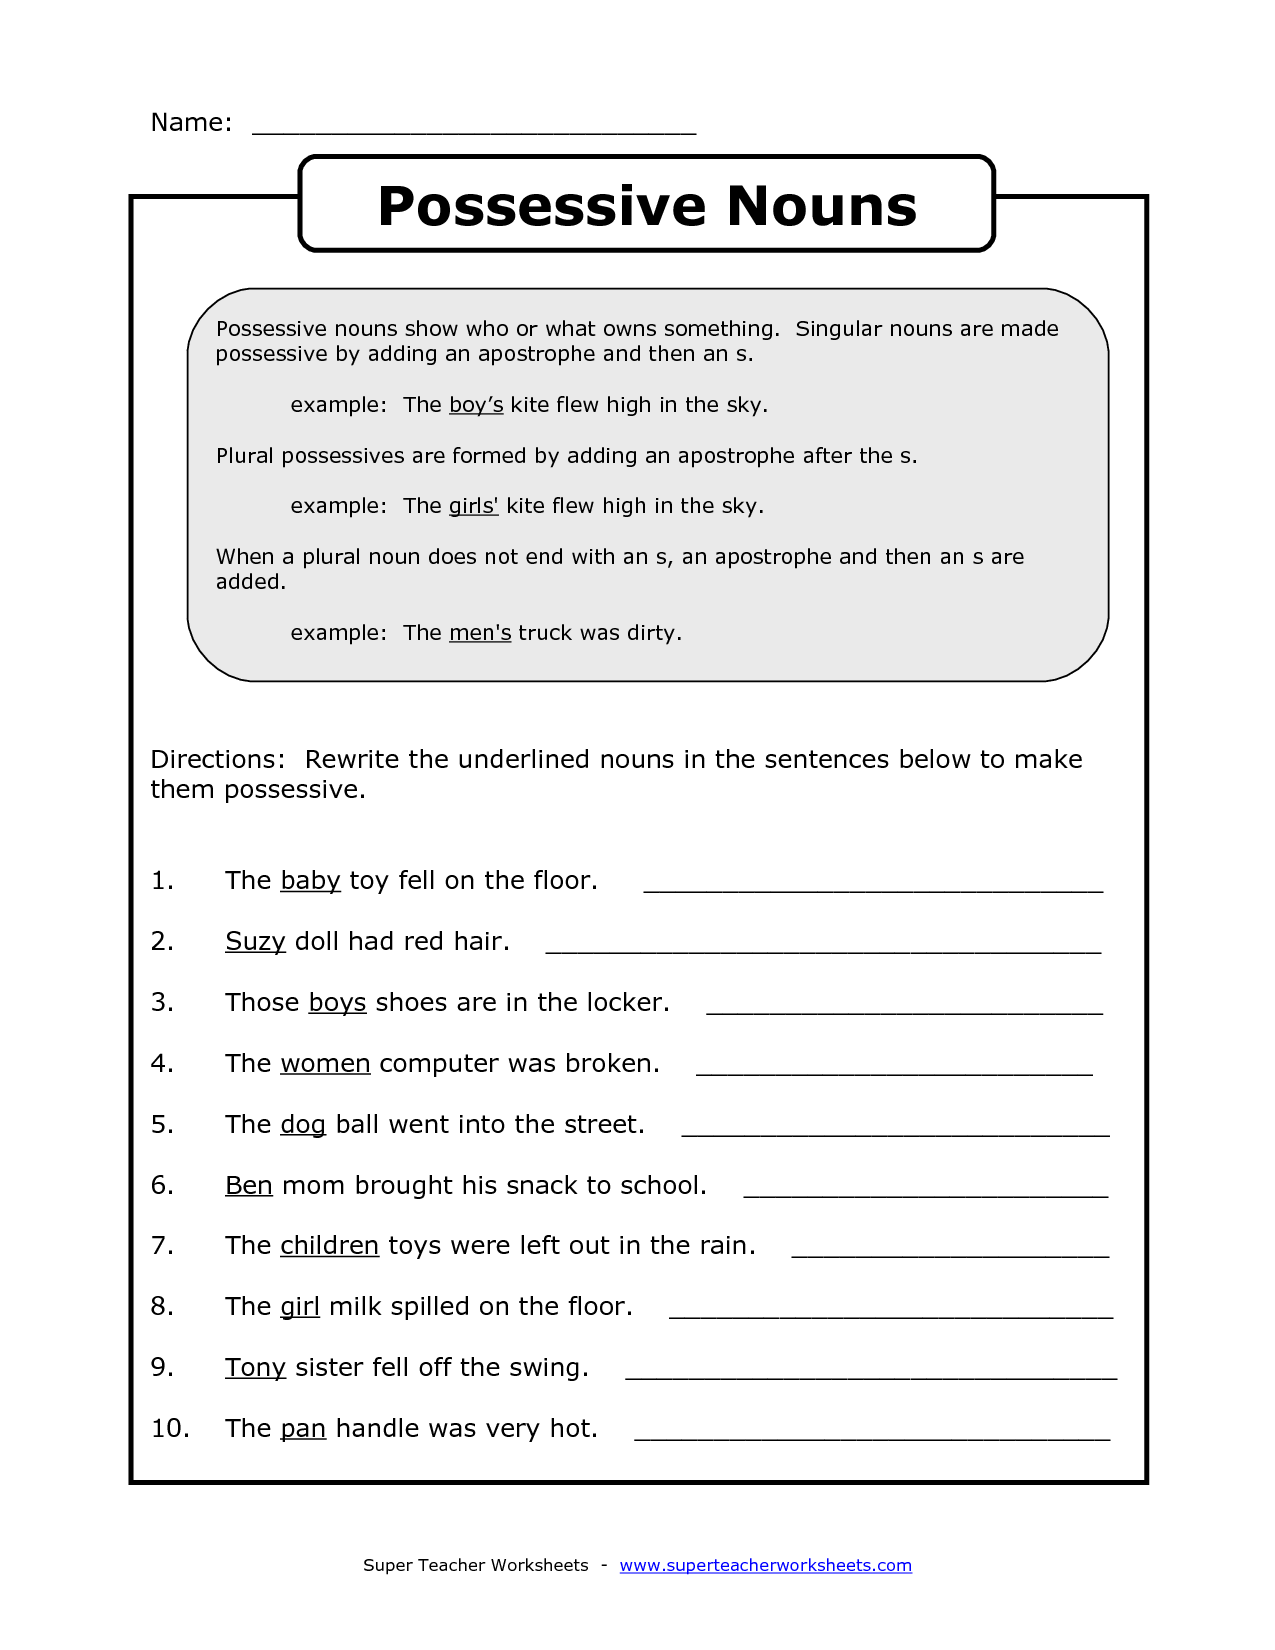 possessive-adjectives-worksheet-for-grade-4-possessive-adjectives-grammar-worksheets